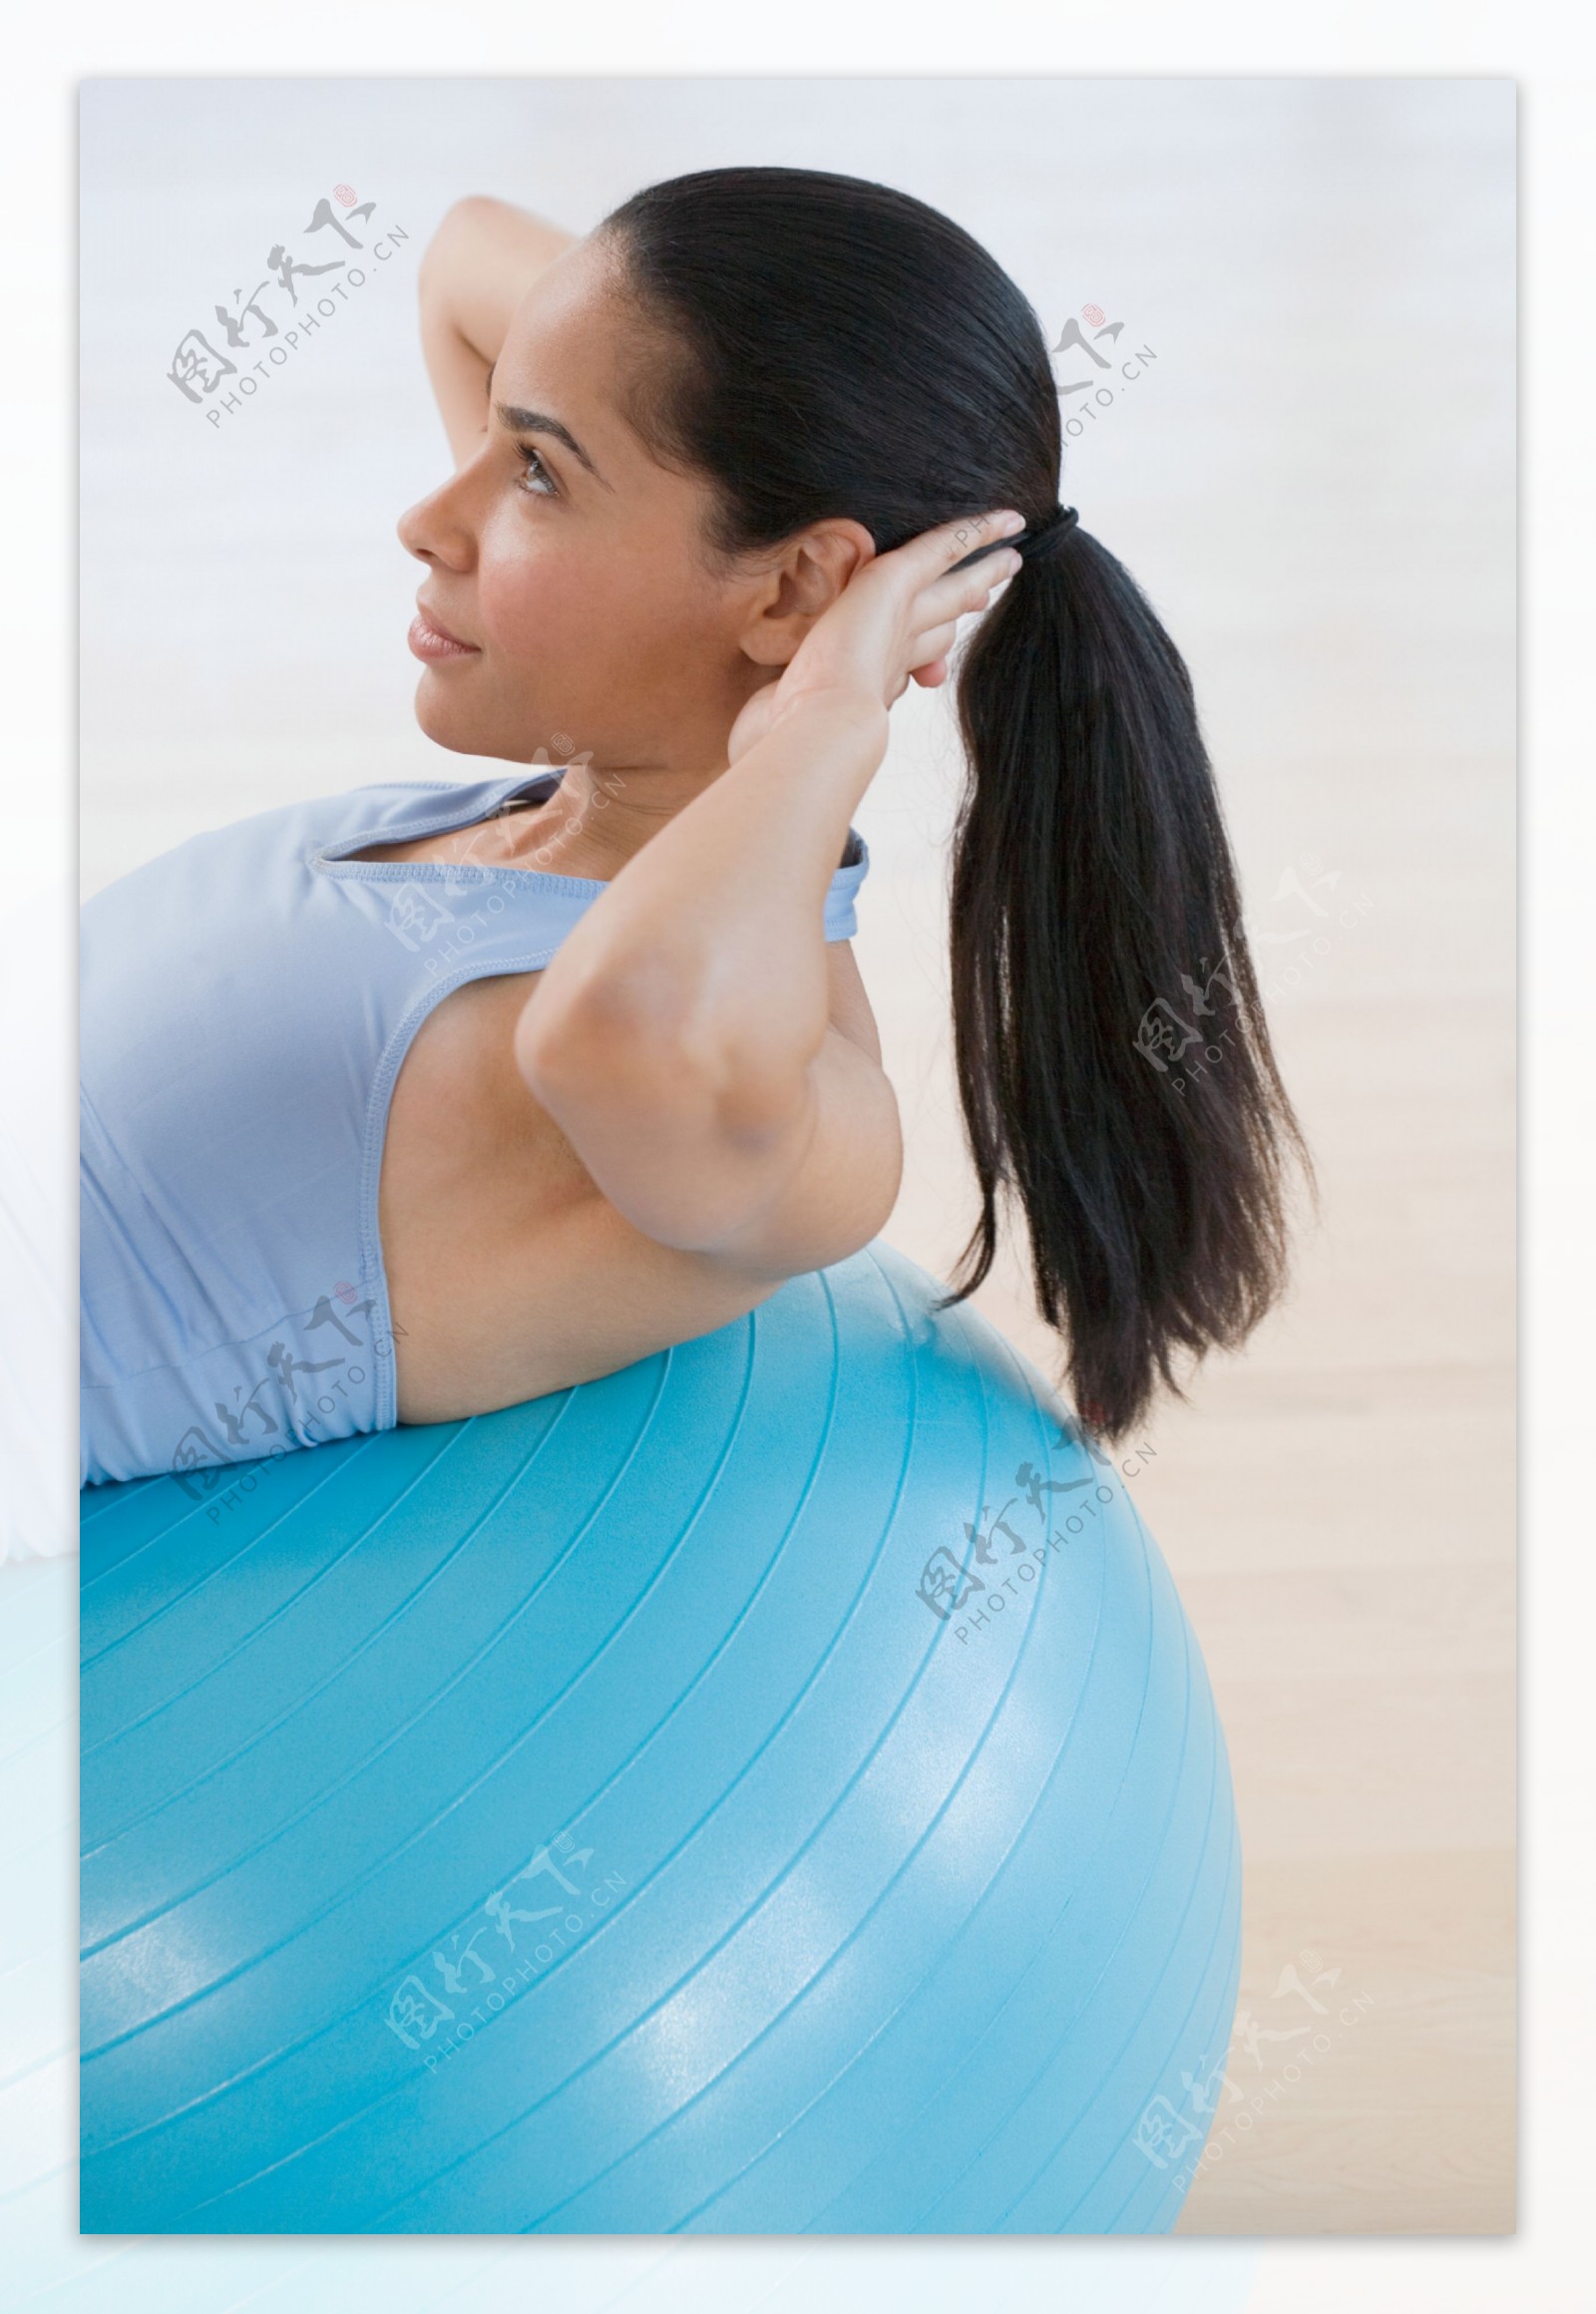 正在练瑜伽的女人图片